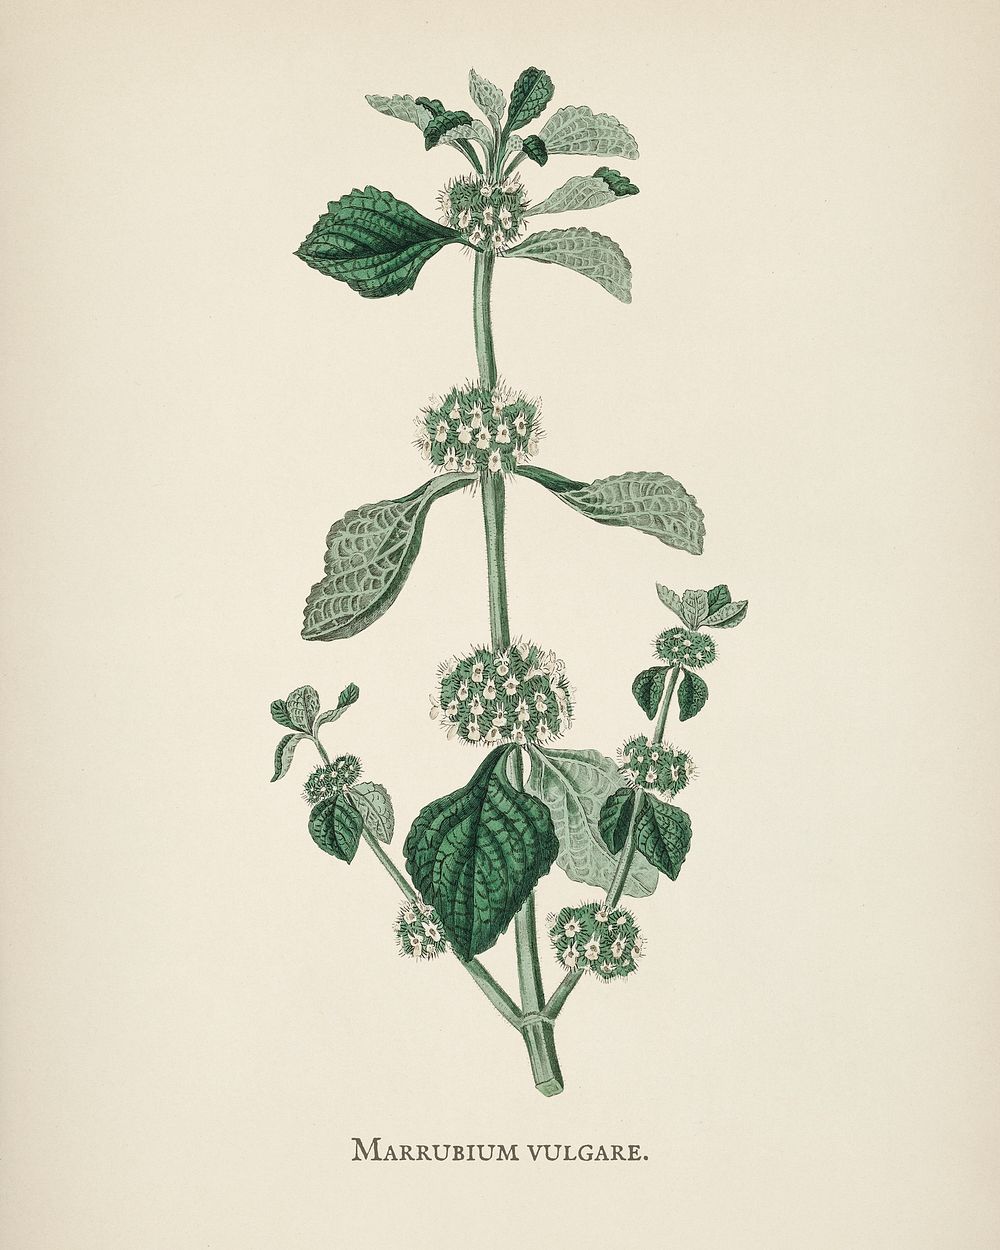 White horehound (Marrubium vulgare) illustration from Medical Botany (1836) by John Stephenson and James Morss Churchill.